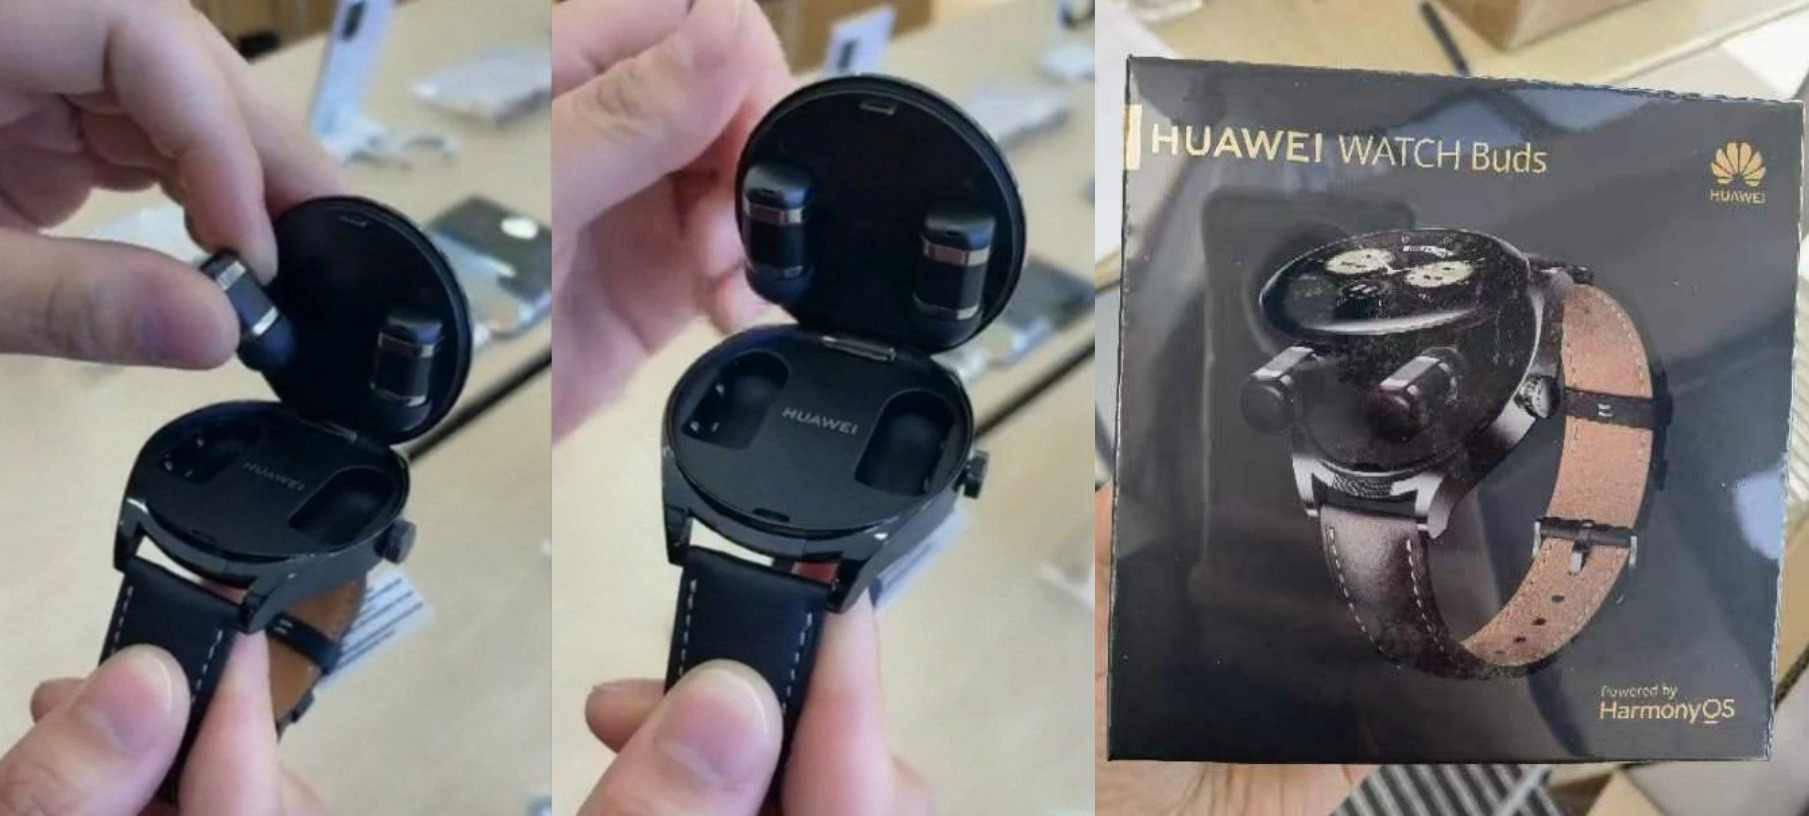 Das wird die Huawei Watch Buds sein - eine seltsame Smartwatch mit Kopfhörern, die im Inneren des Gehäuses versteckt sind